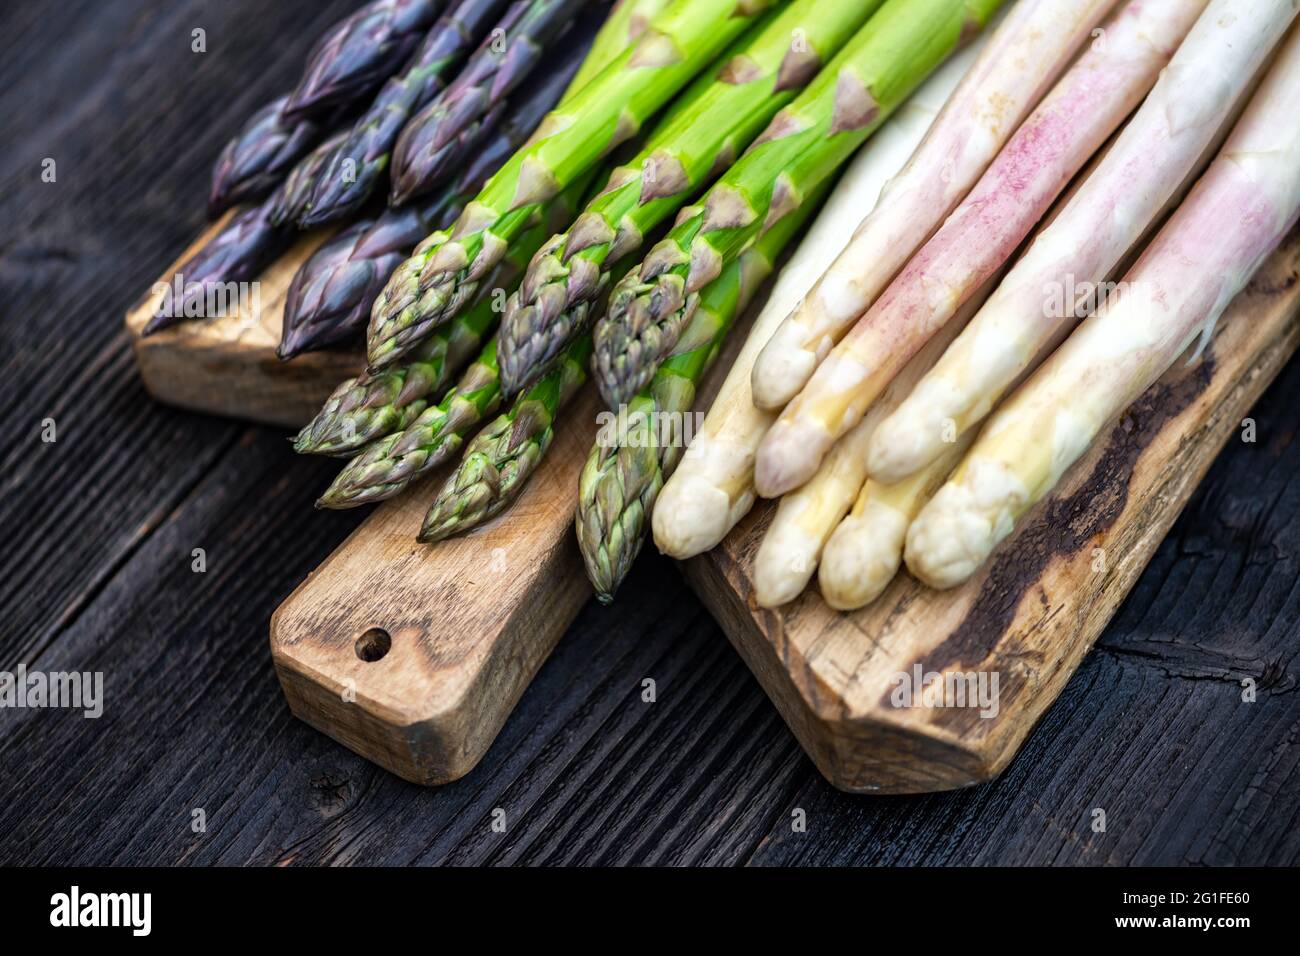 Germogli di asparagi verdi, viola e bianchi su tavola di legno. Vista dall'alto in piano. Fotografia alimentare Foto Stock